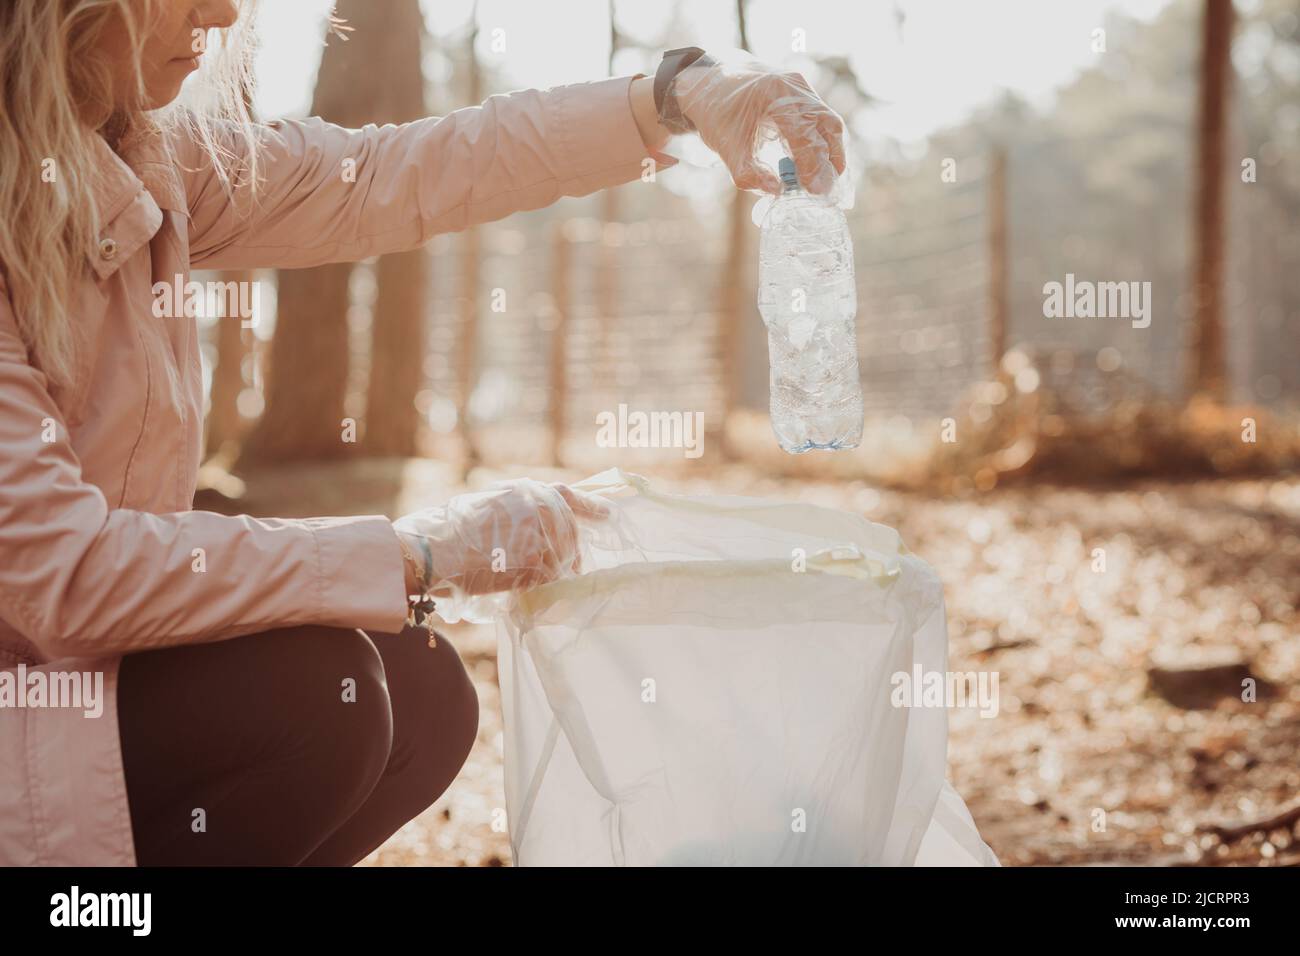 La activista de la mujer recortada ayuda a limpiar el bosque de los desechos plásticos, la basura. Recoja la botella en la bolsa. Reciclaje ecológico mundial Foto de stock